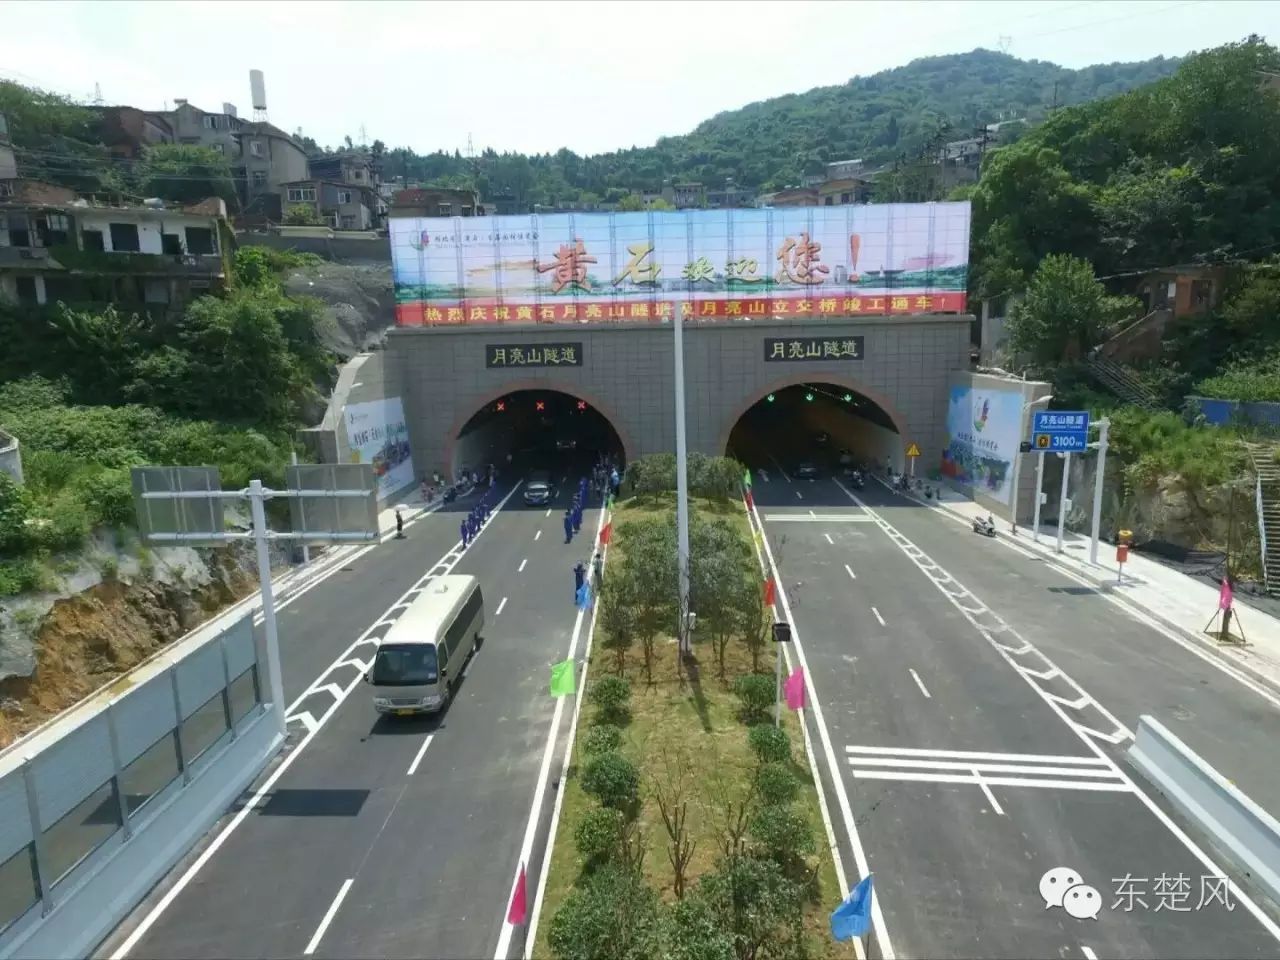 月亮山隧道通车后,33路公交的走向初步定为:颐阳路(陈家湾停车场)-磁